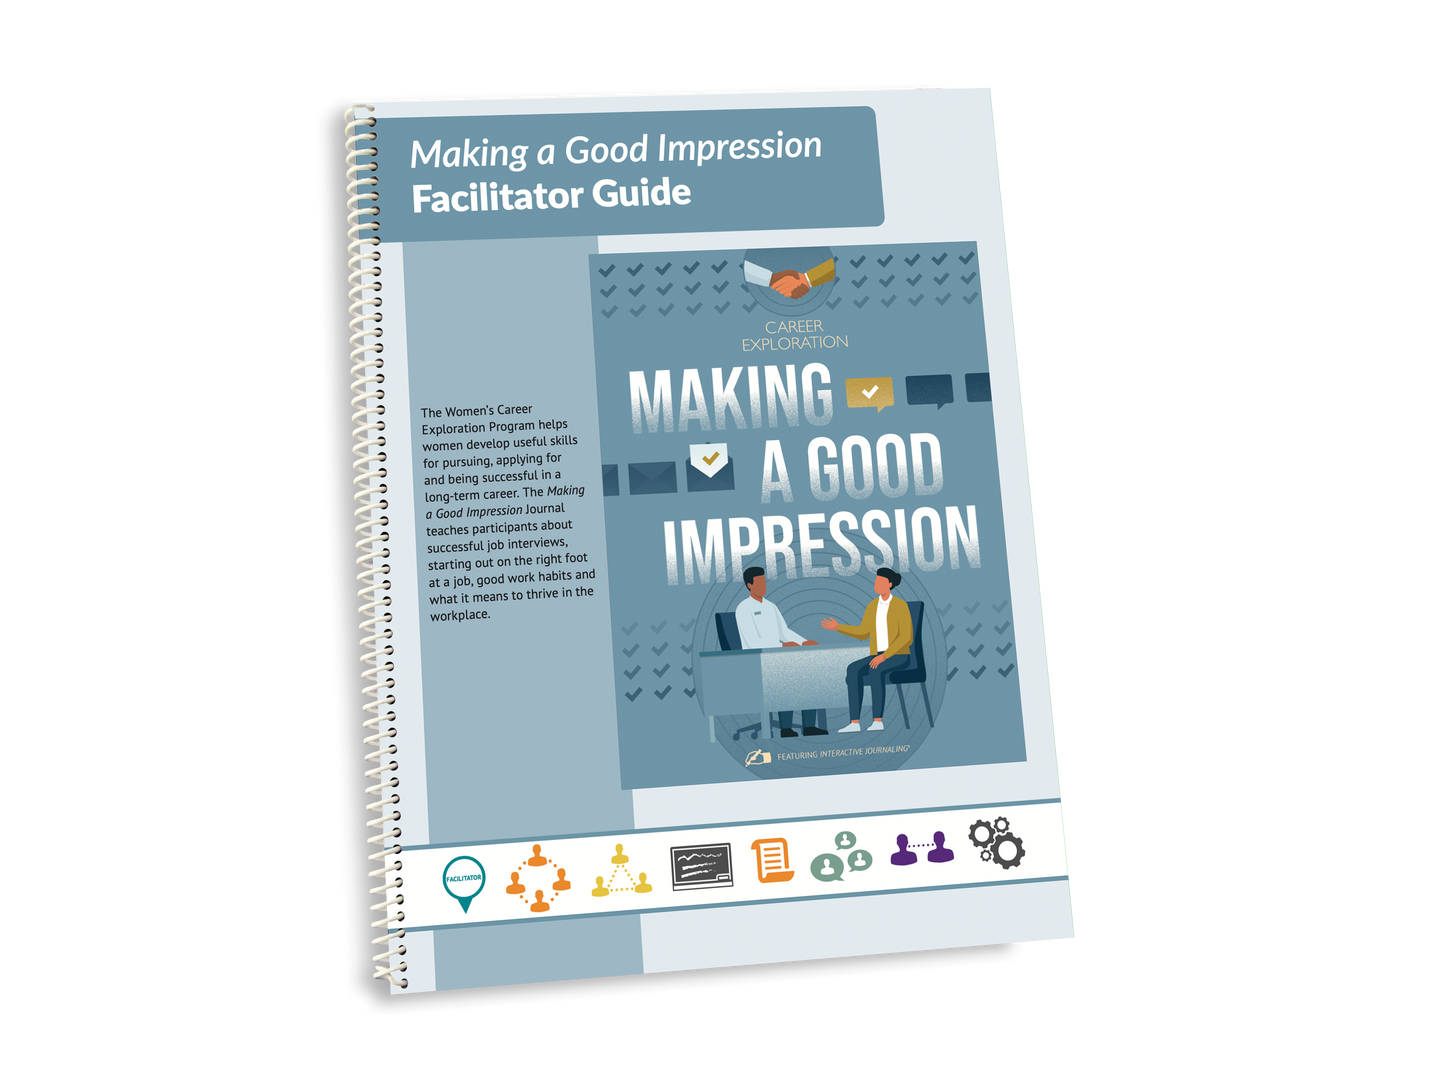 Career Exploration 3 Facilitator Guide: Making a Good Impression